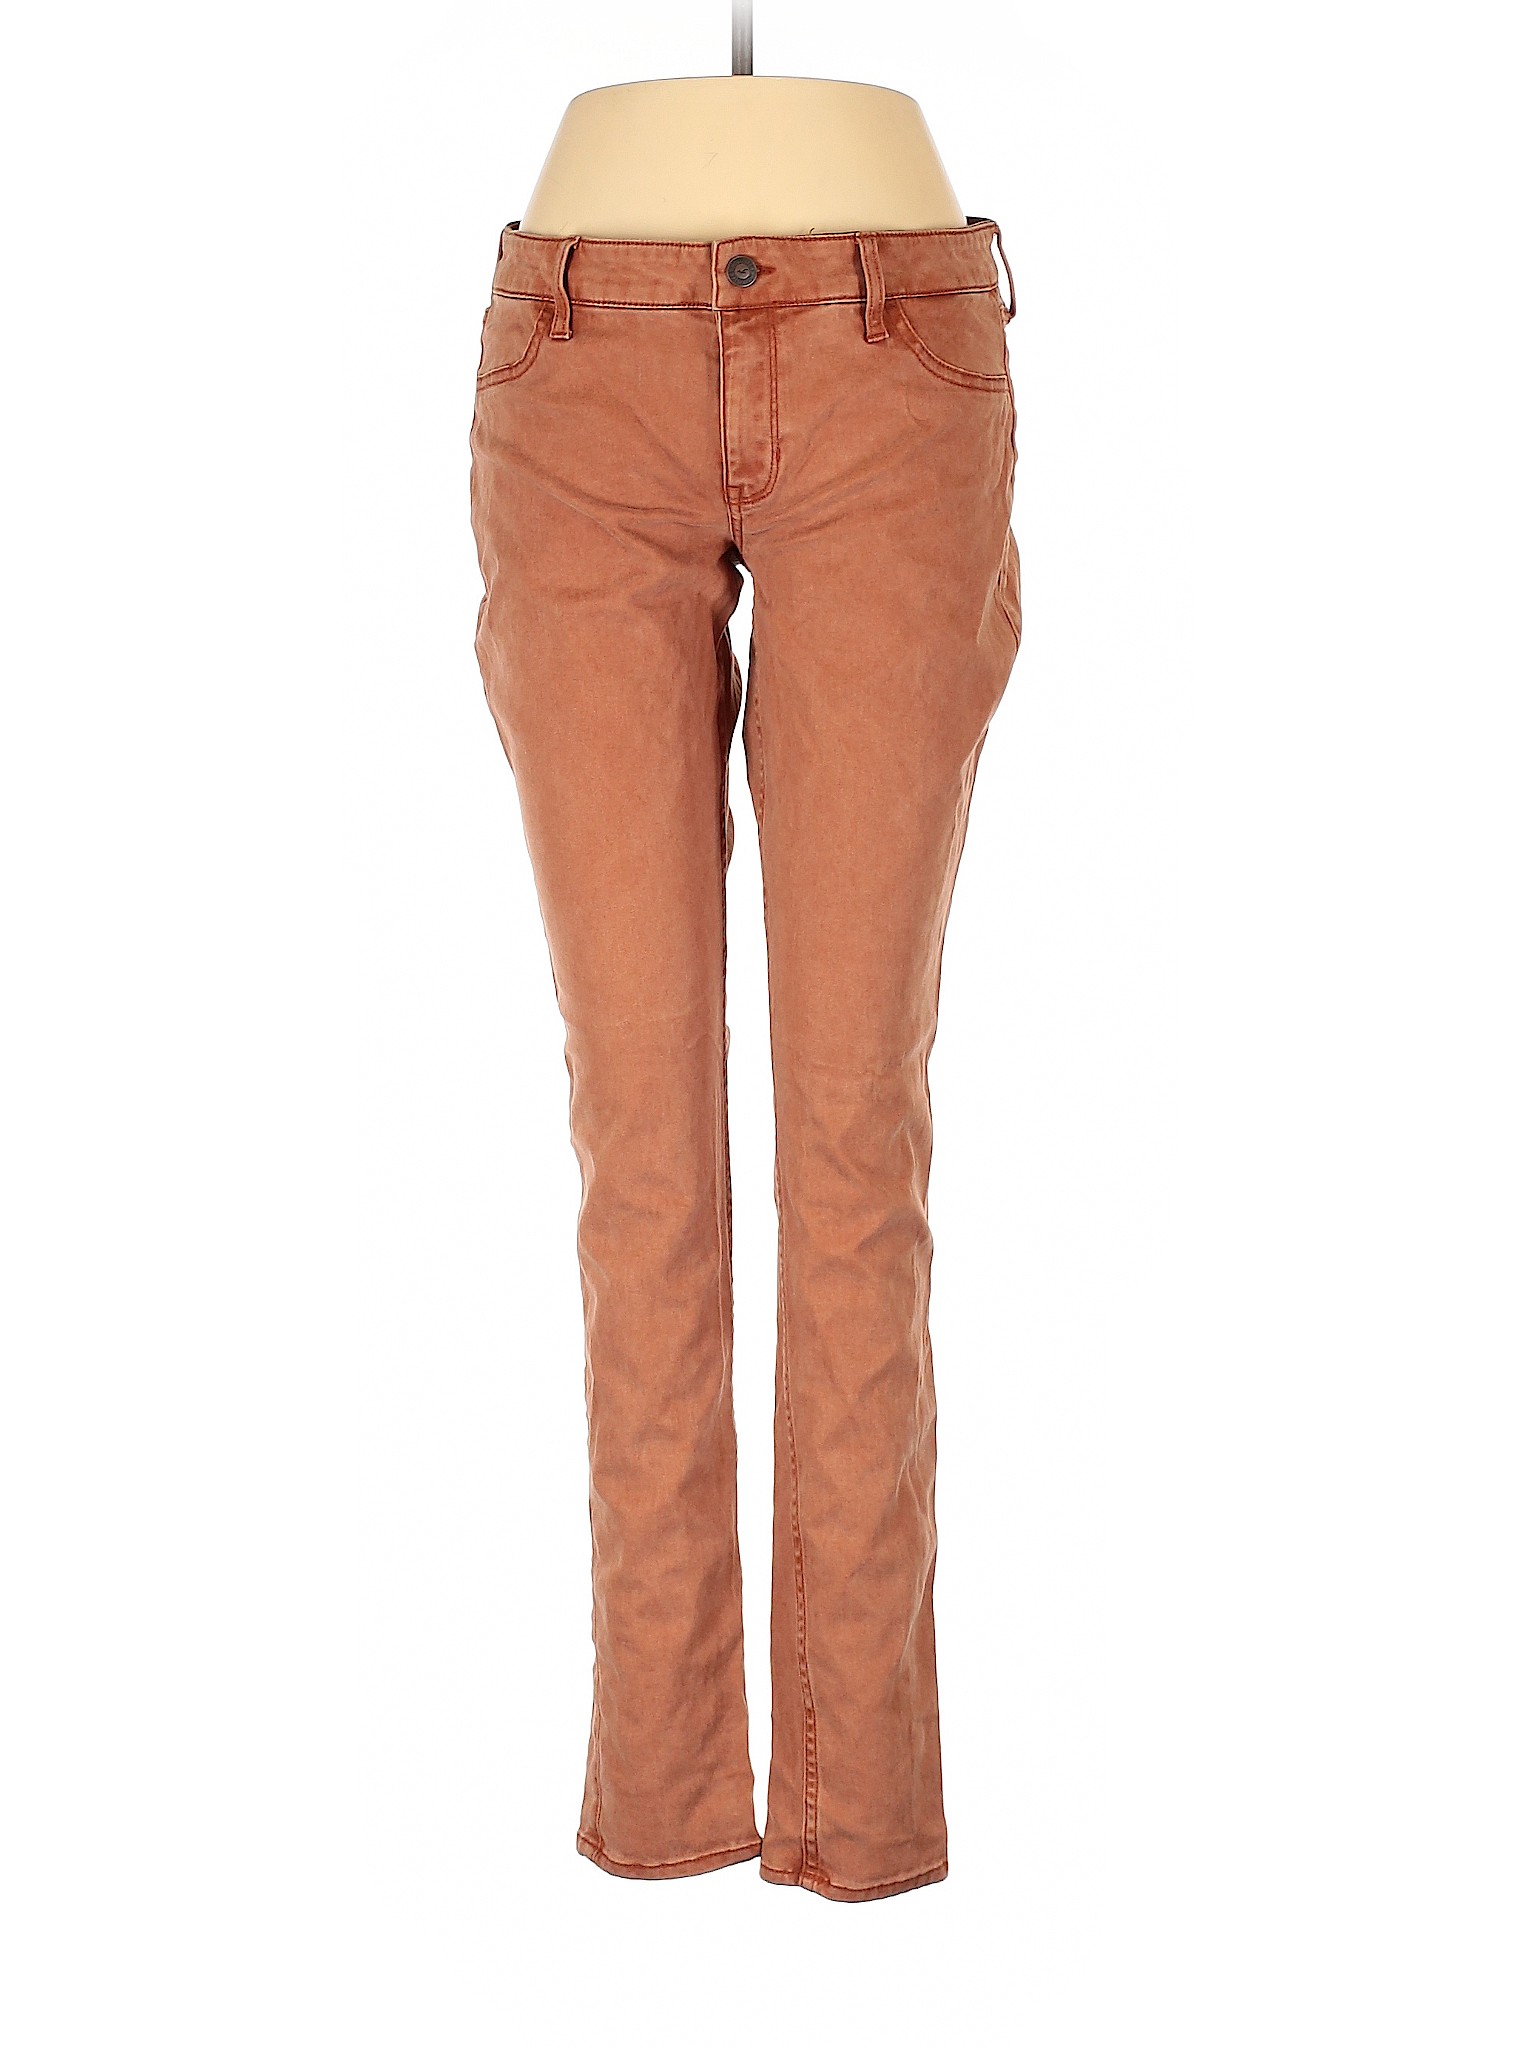 Hollister Women Brown Jeans 5 | eBay